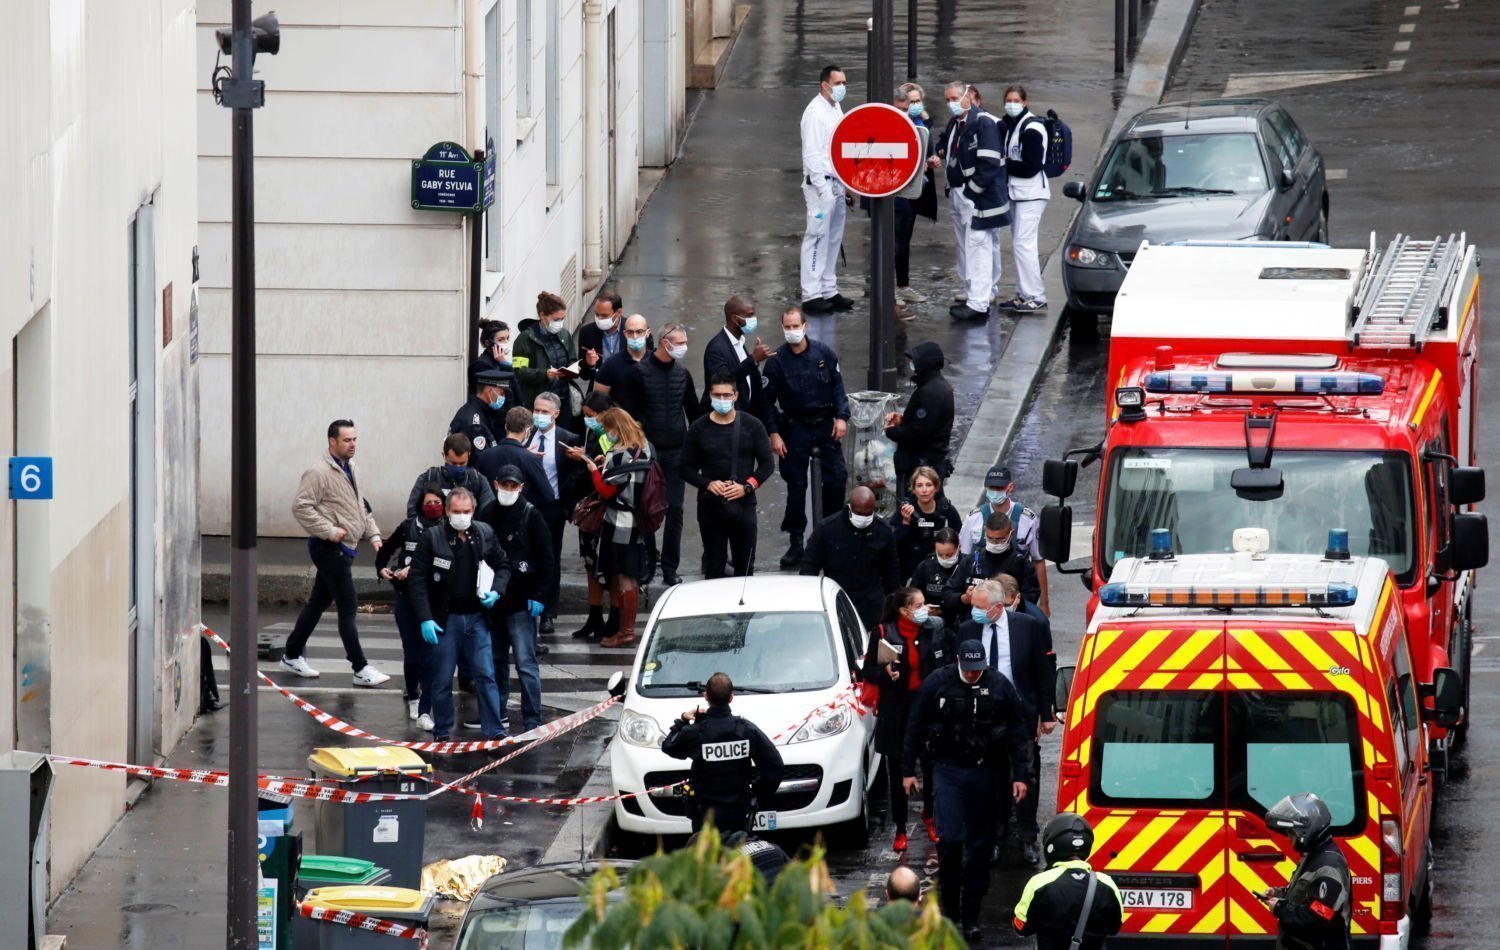 Теракты в париже в 2015 году. Шарли Эбдо теракт в Париже. Теракт в Париже 13 ноября 2015. Террористический акт в редакции Charlie Hebdo в Париже 7 января 2015 года.